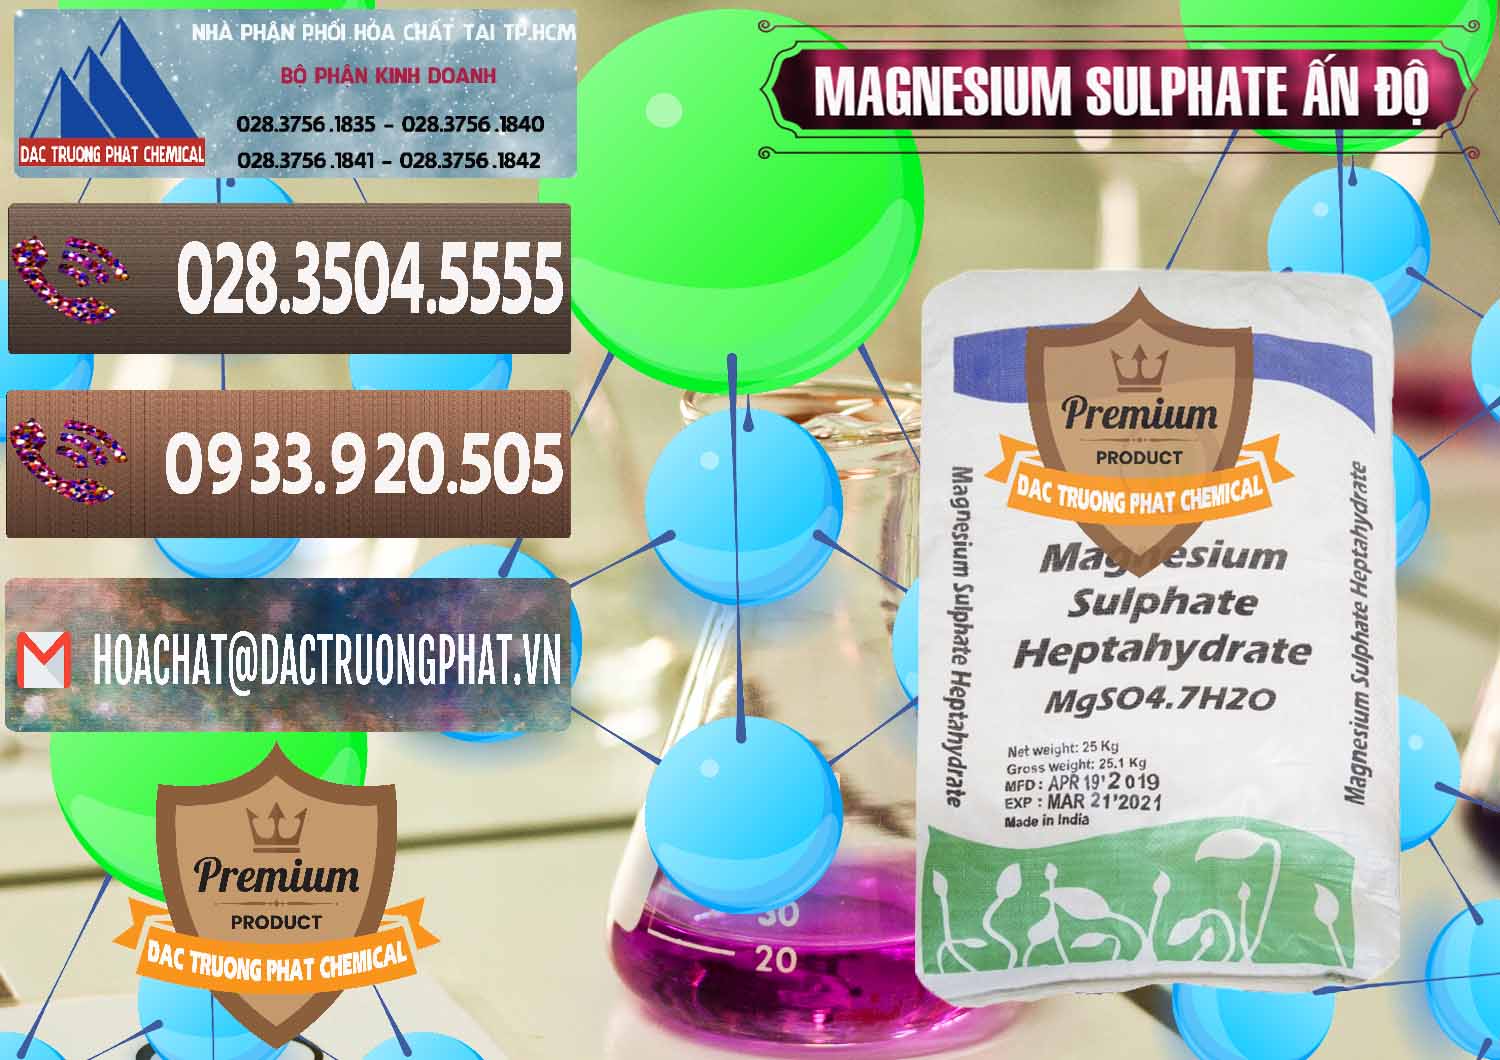 Đơn vị bán và cung cấp MGSO4.7H2O – Magnesium Sulphate Heptahydrate Ấn Độ India - 0362 - Đơn vị nhập khẩu - cung cấp hóa chất tại TP.HCM - hoachatviet.net